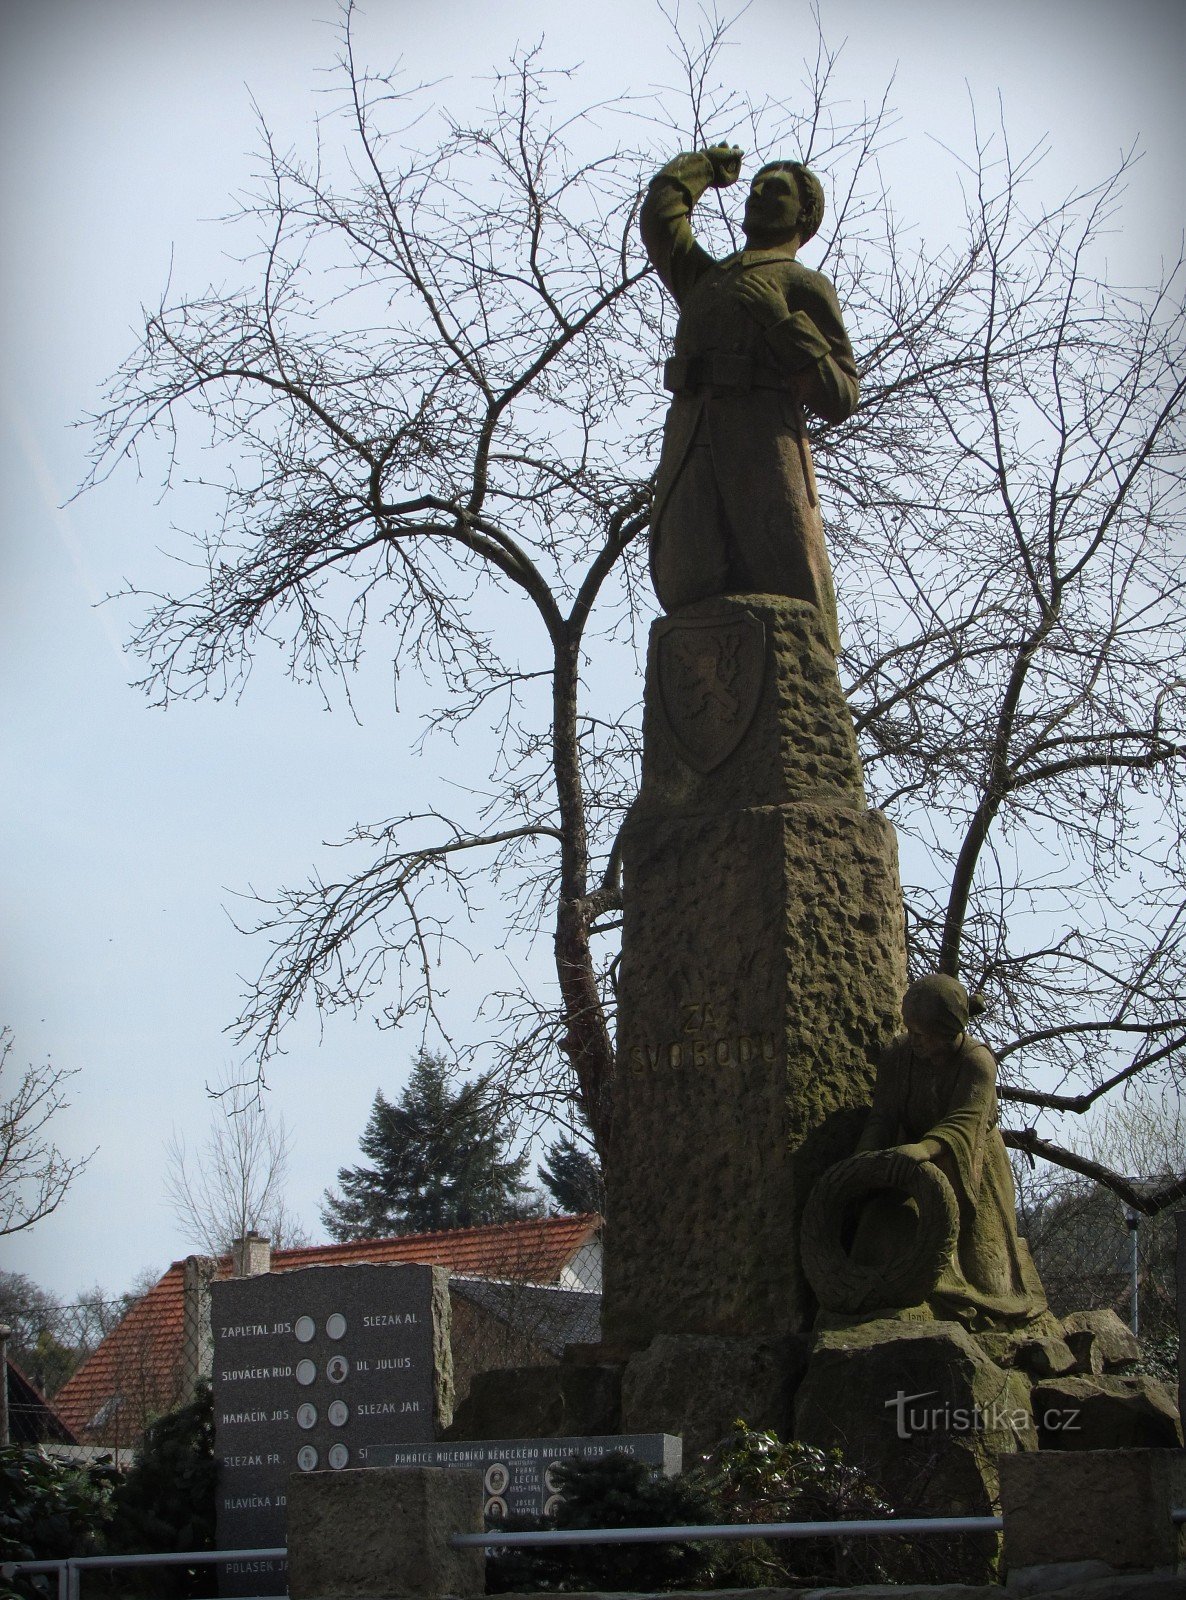 布热兹尼采遇难者纪念碑